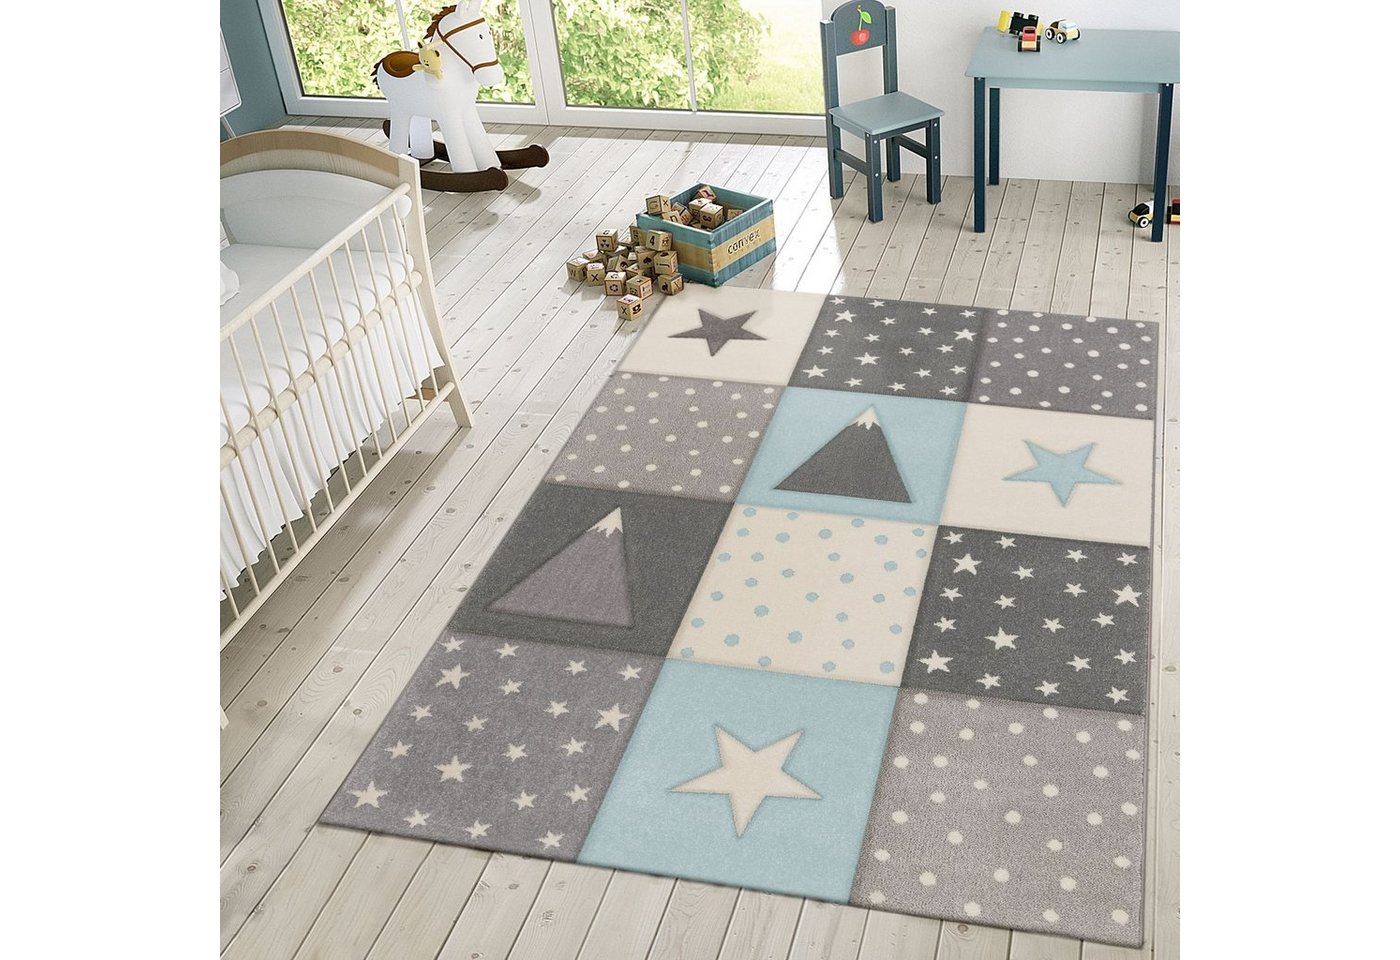 Kinderteppich »Kinder Teppich Spielteppich Karos Punkte Sterne Mond Pastell Türkis Weiß Grau«, TT Home von TT Home